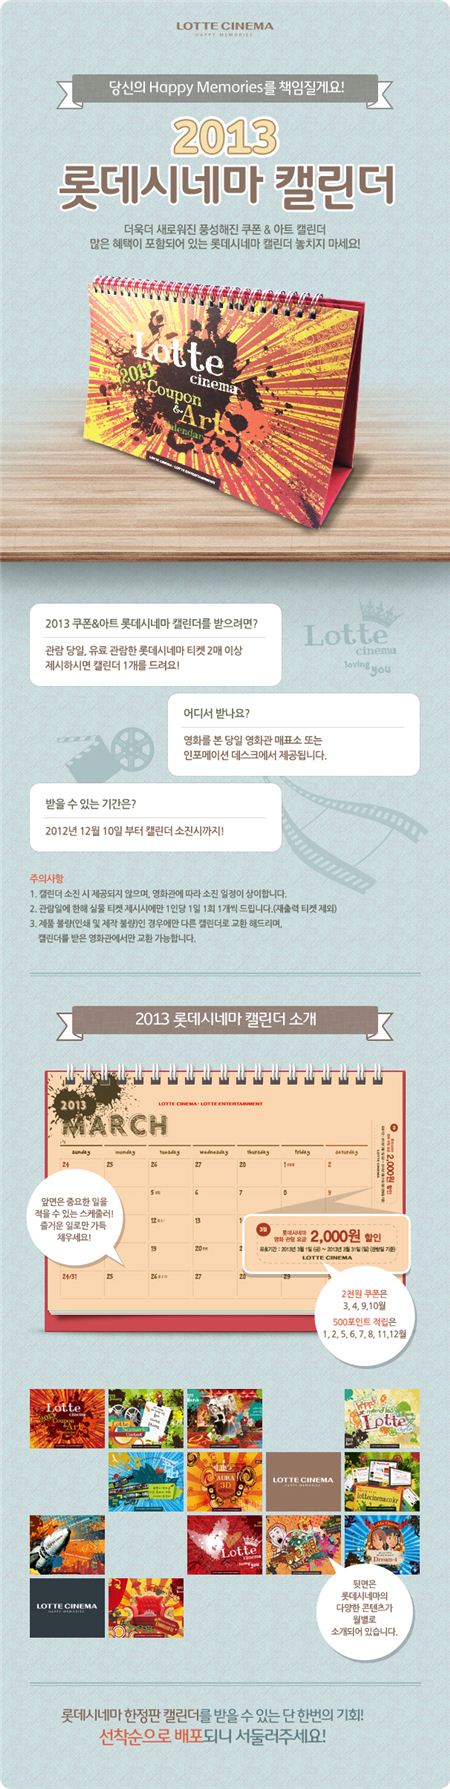 롯데시네마, 영화 팬 위한 '2013년 캘린더' 무료 배포